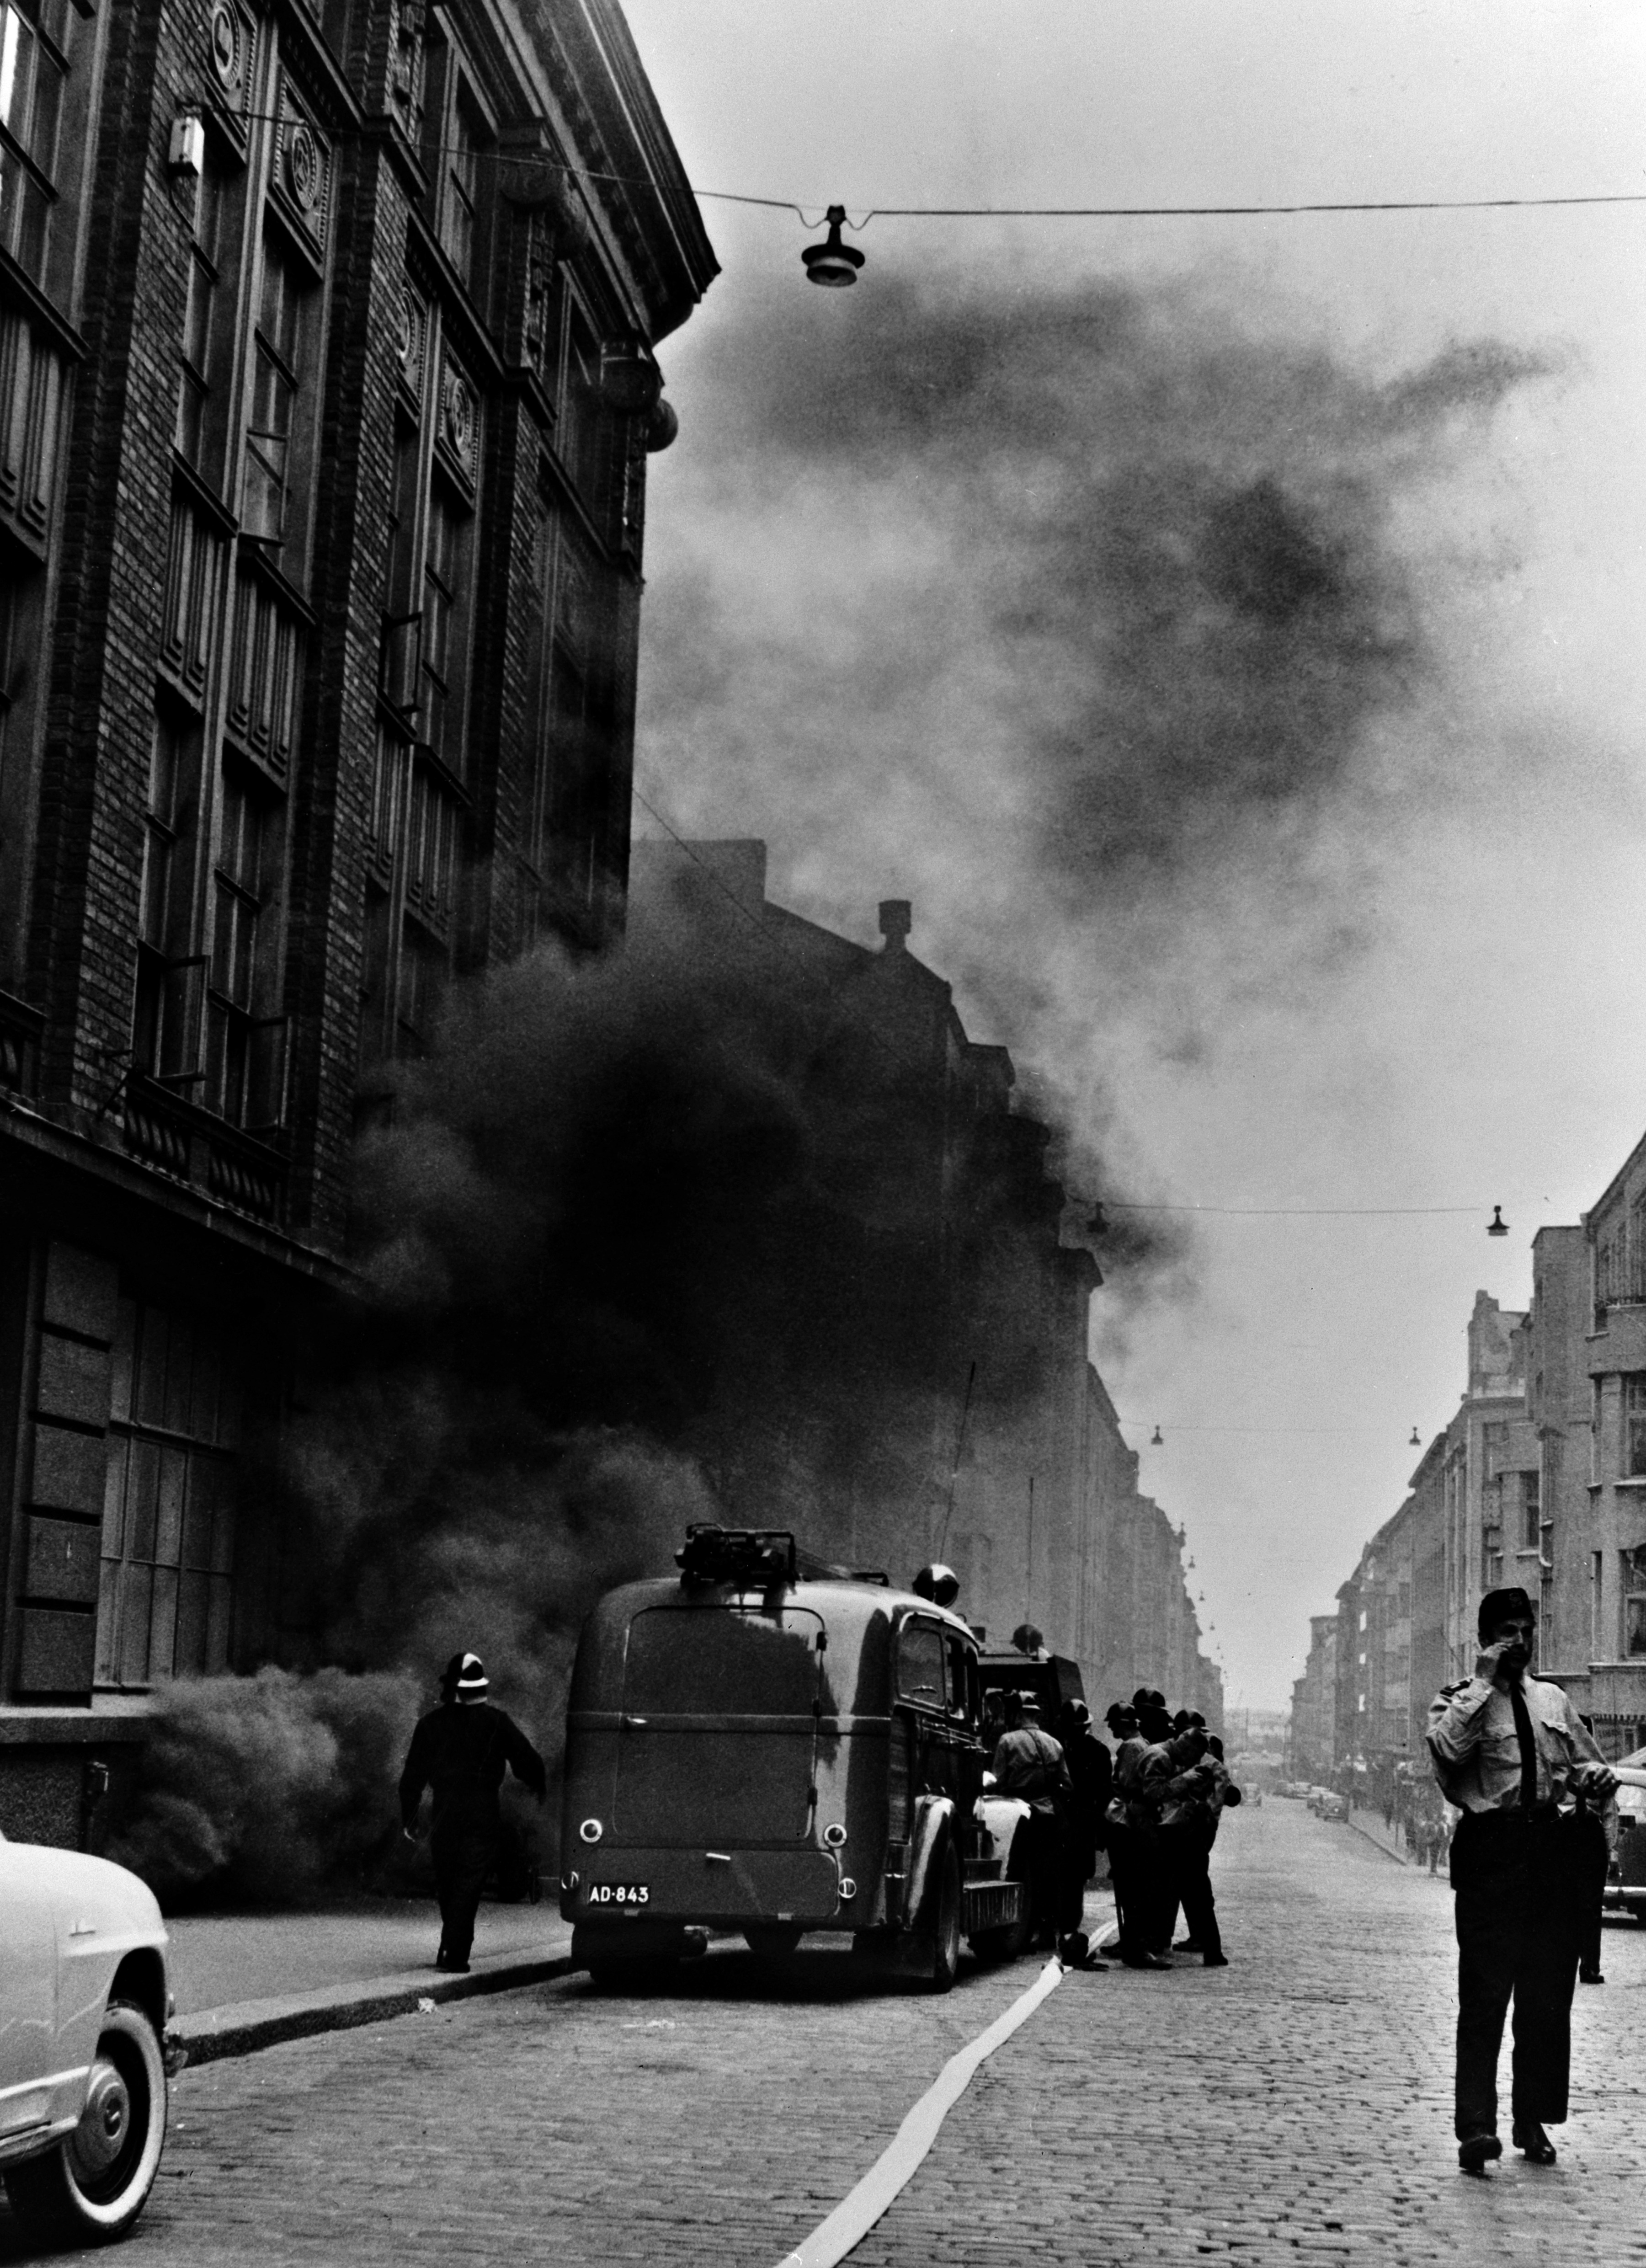 Oy Tilgmann Ab:n toimitalon palon sammutustyöt 12.7.1960. Kuva otettu palokunnan juuri saavuttua paikalle joitakin minuutteja ennen räjähdystä.